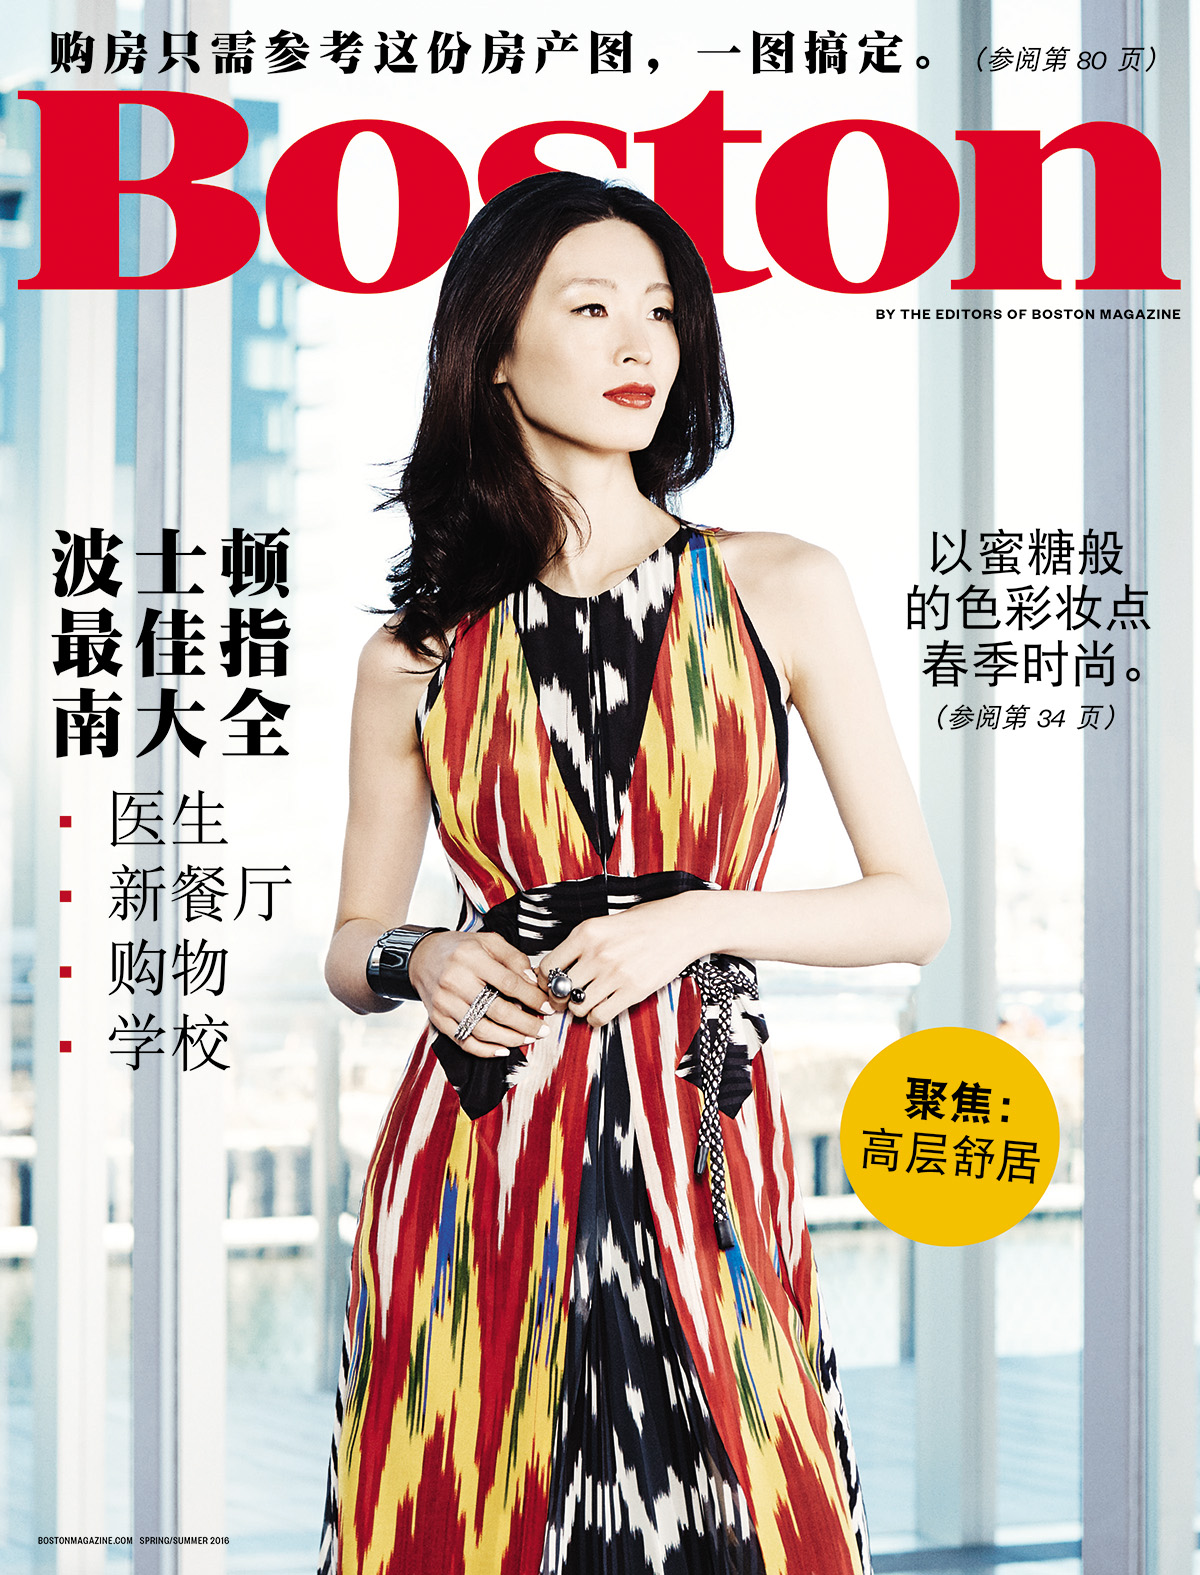 boston magazine chinese cover